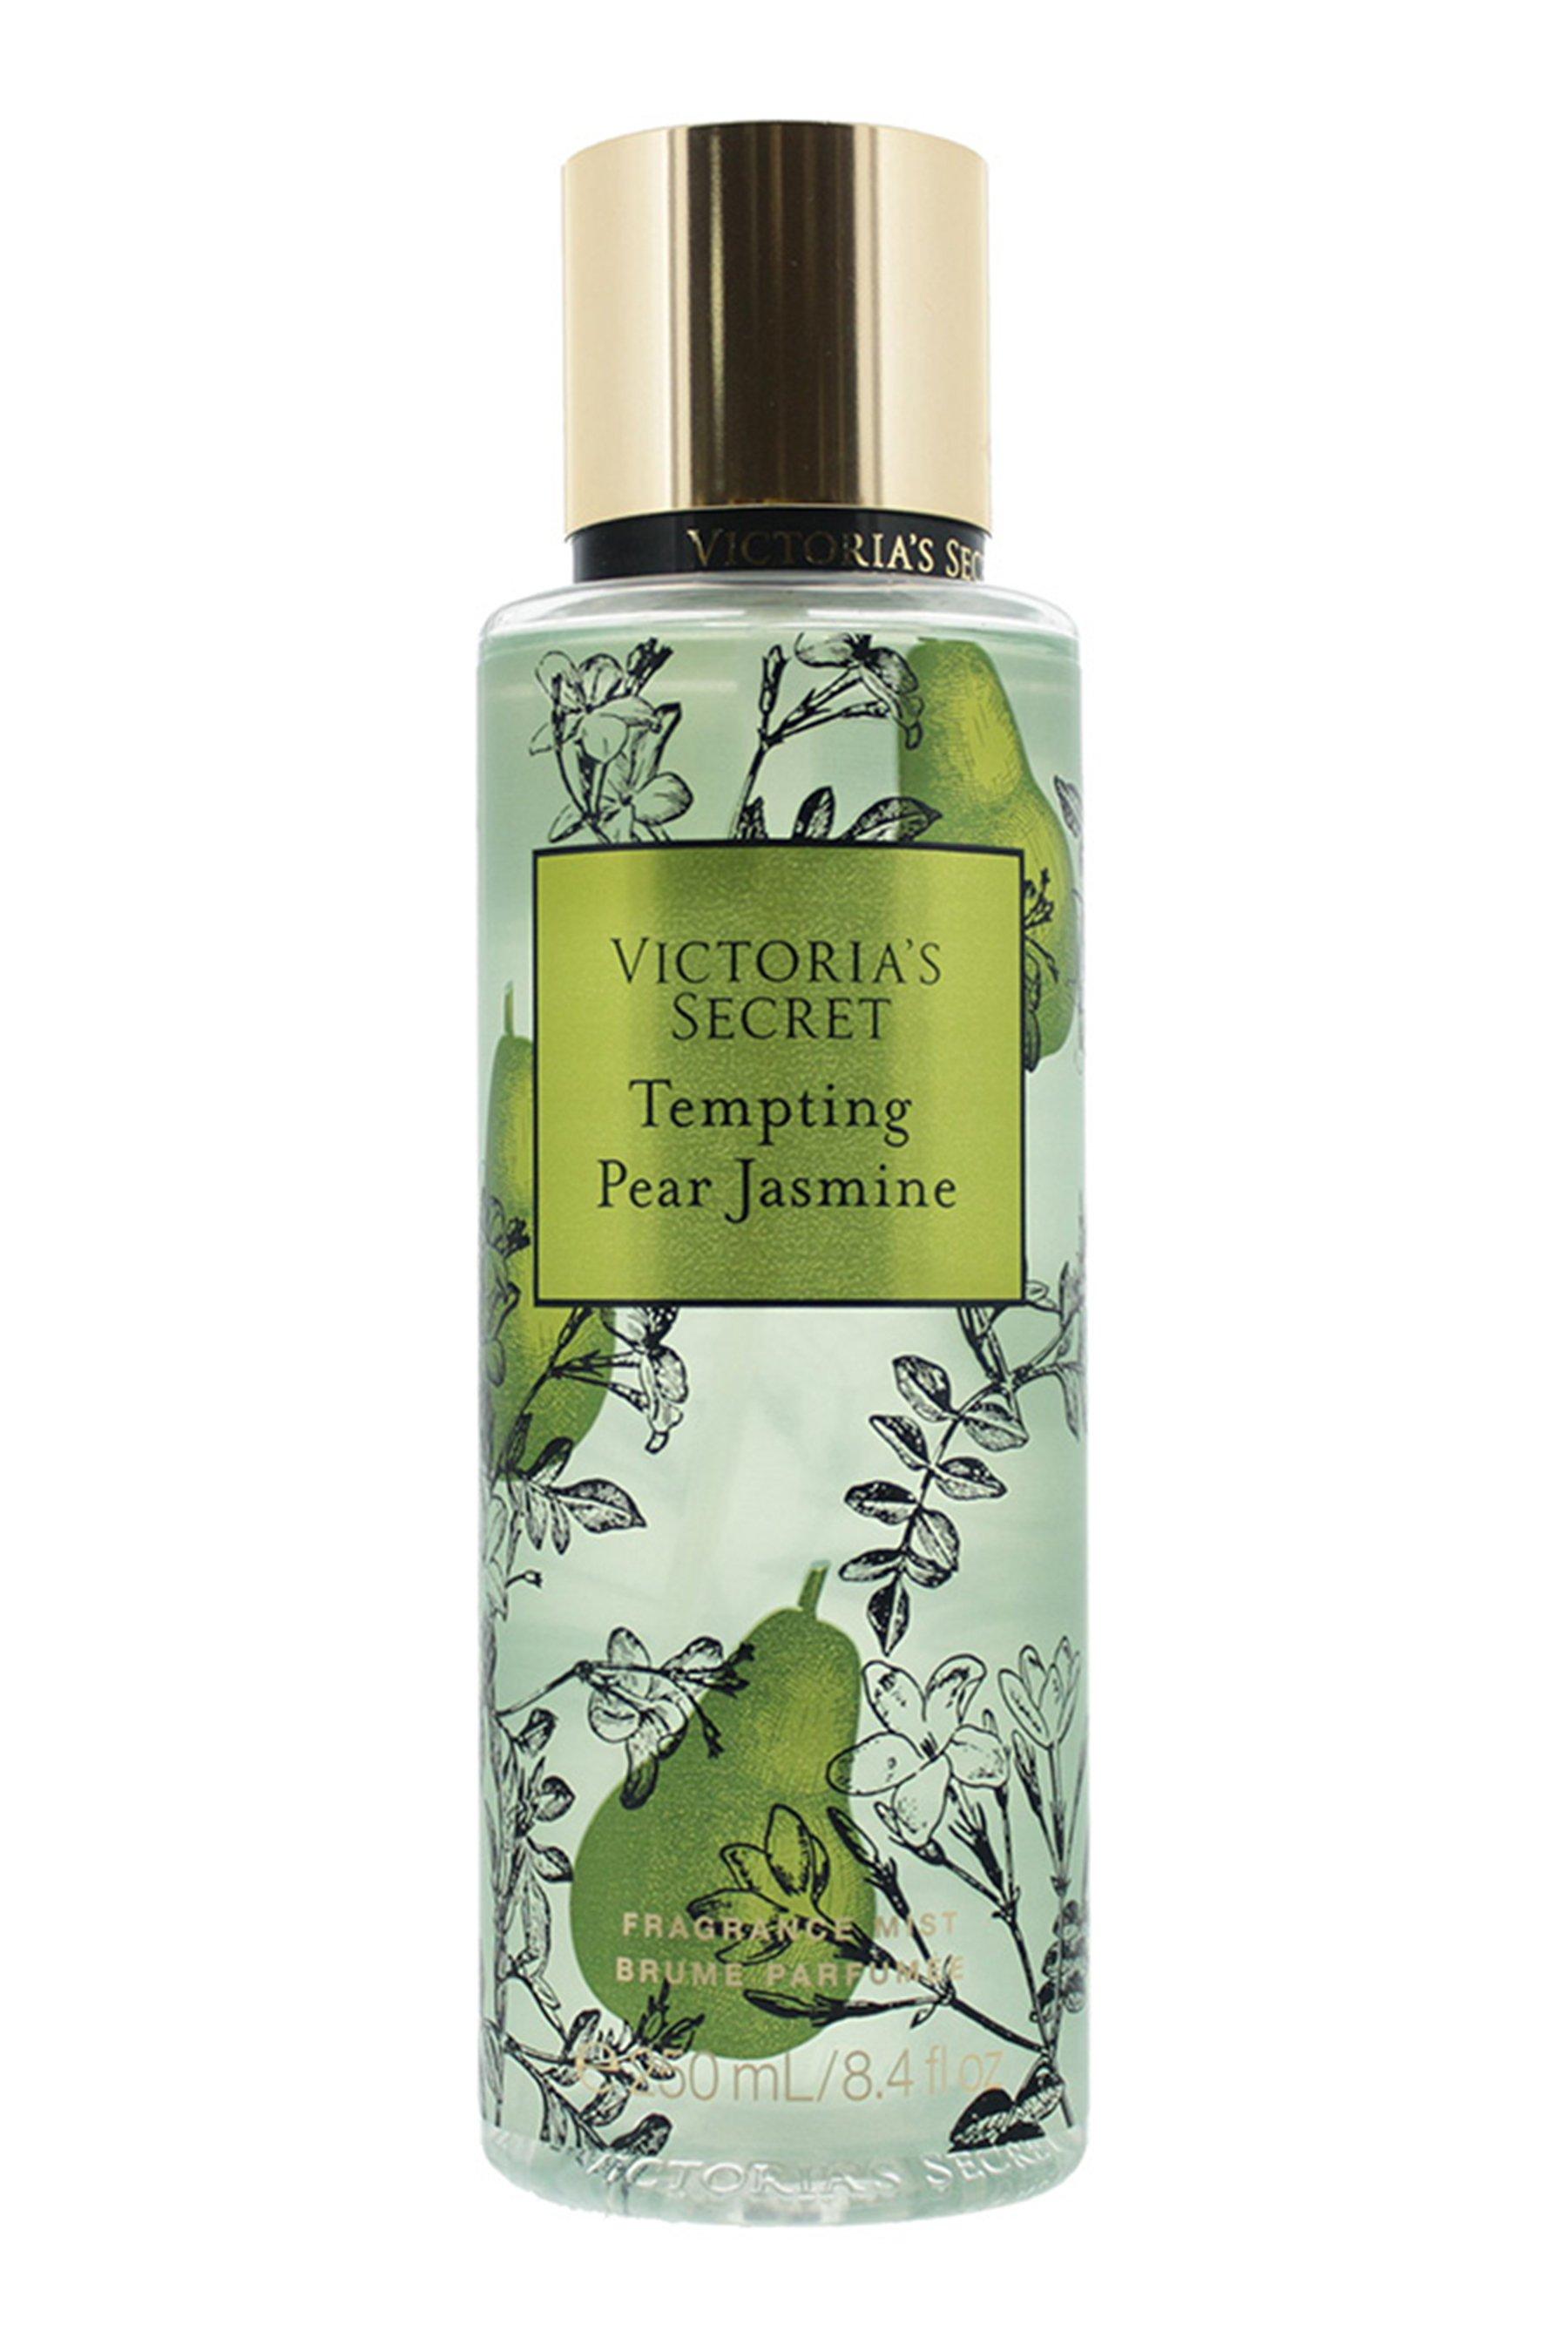 victorias secret tempting pear jasmine 250ml fragrance mist